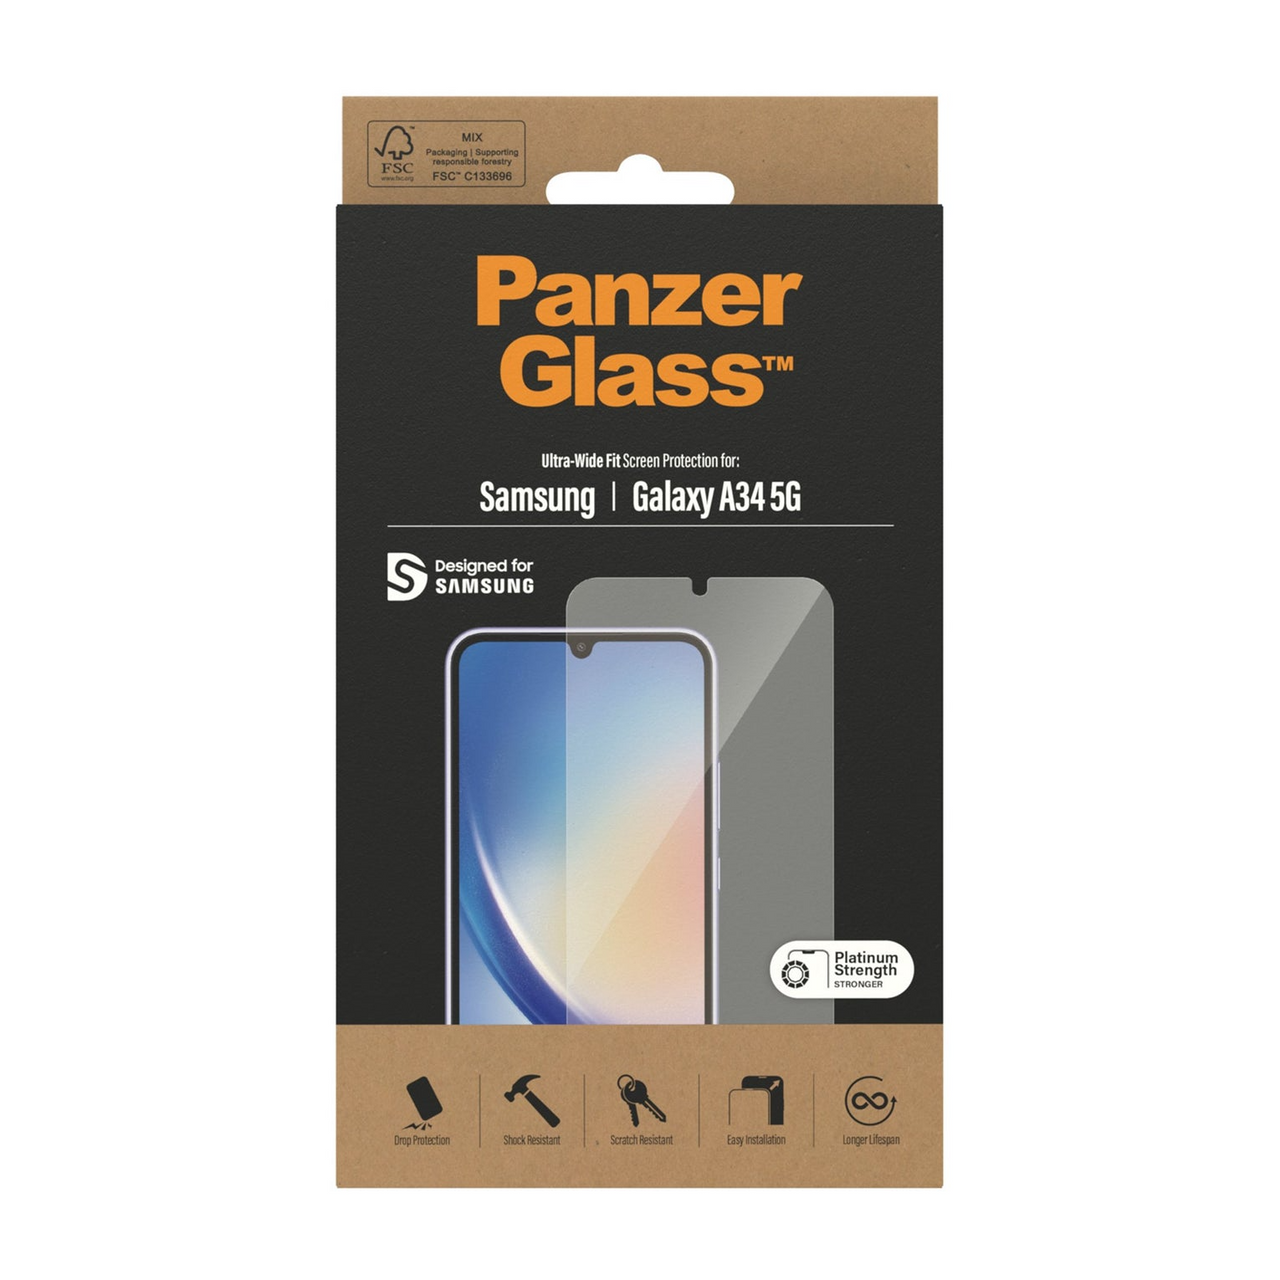 PanzerGlass Samsung Galaxy A34 5G Screen Protector - Clear